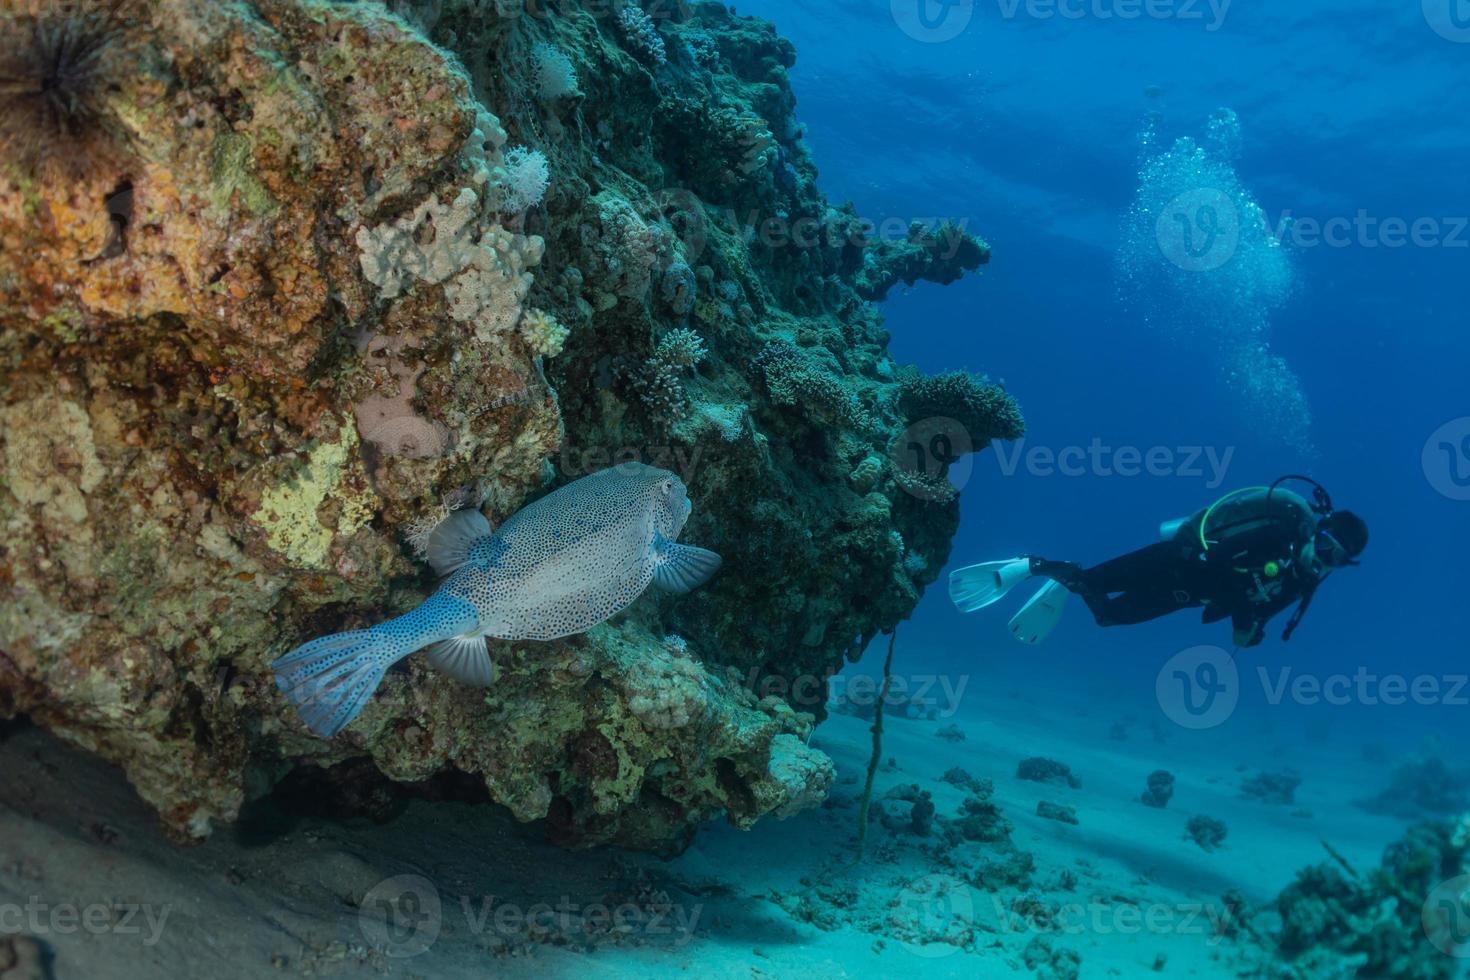 peces nadan en el mar rojo, peces de colores, eilat israel foto